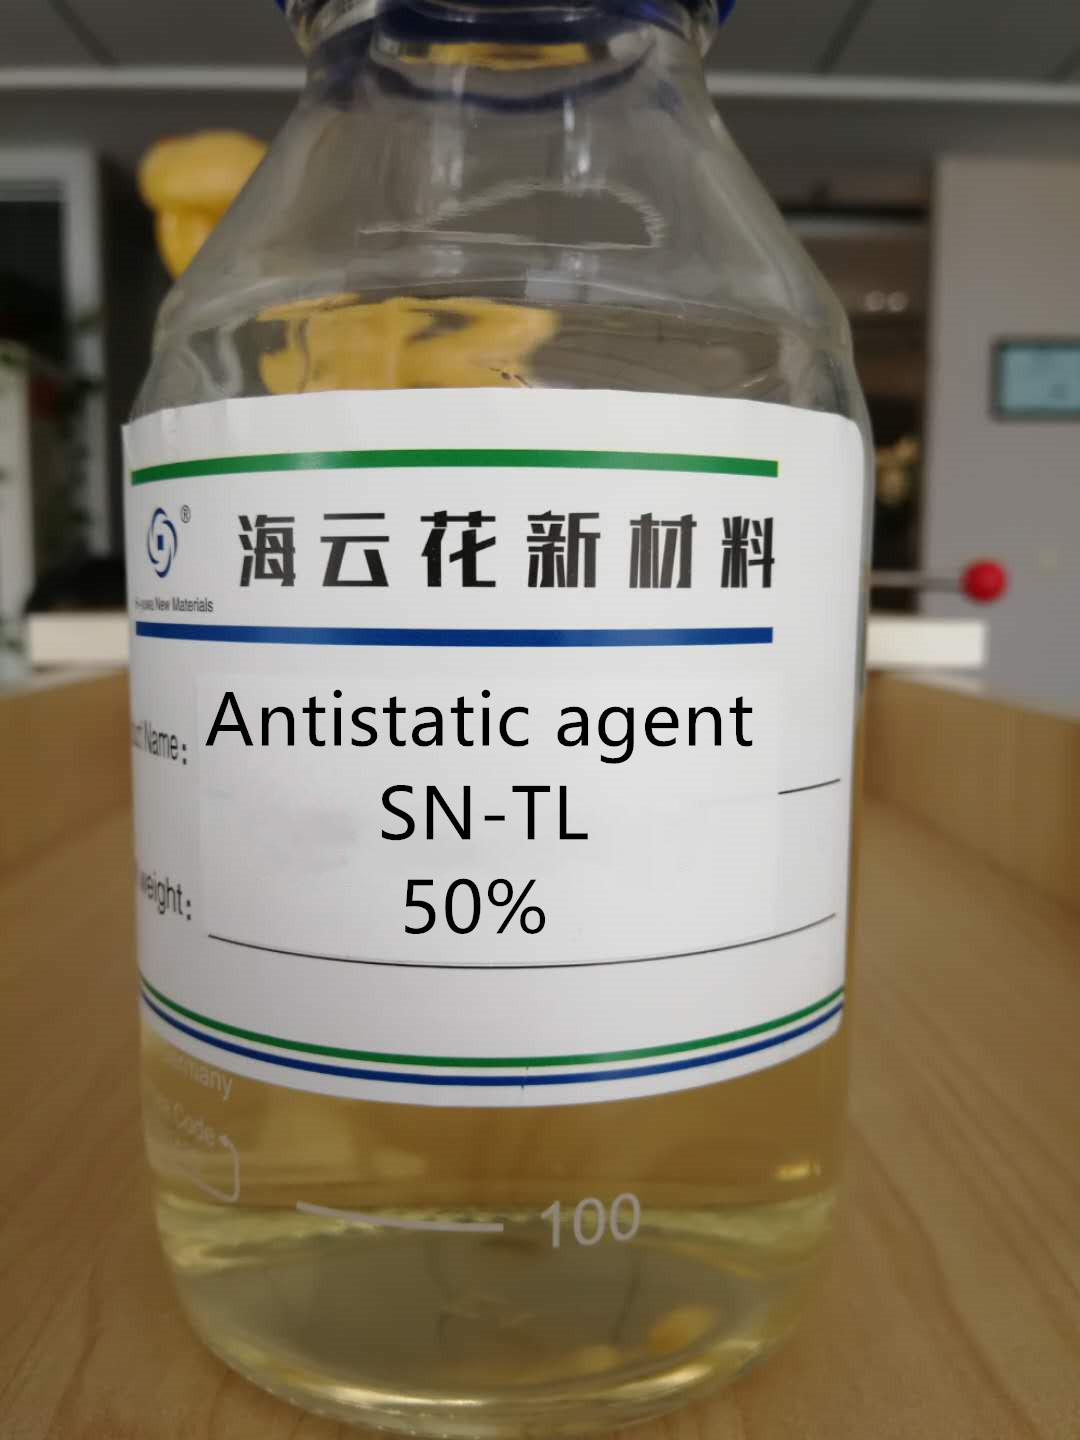 Anti-static agent SN-TL